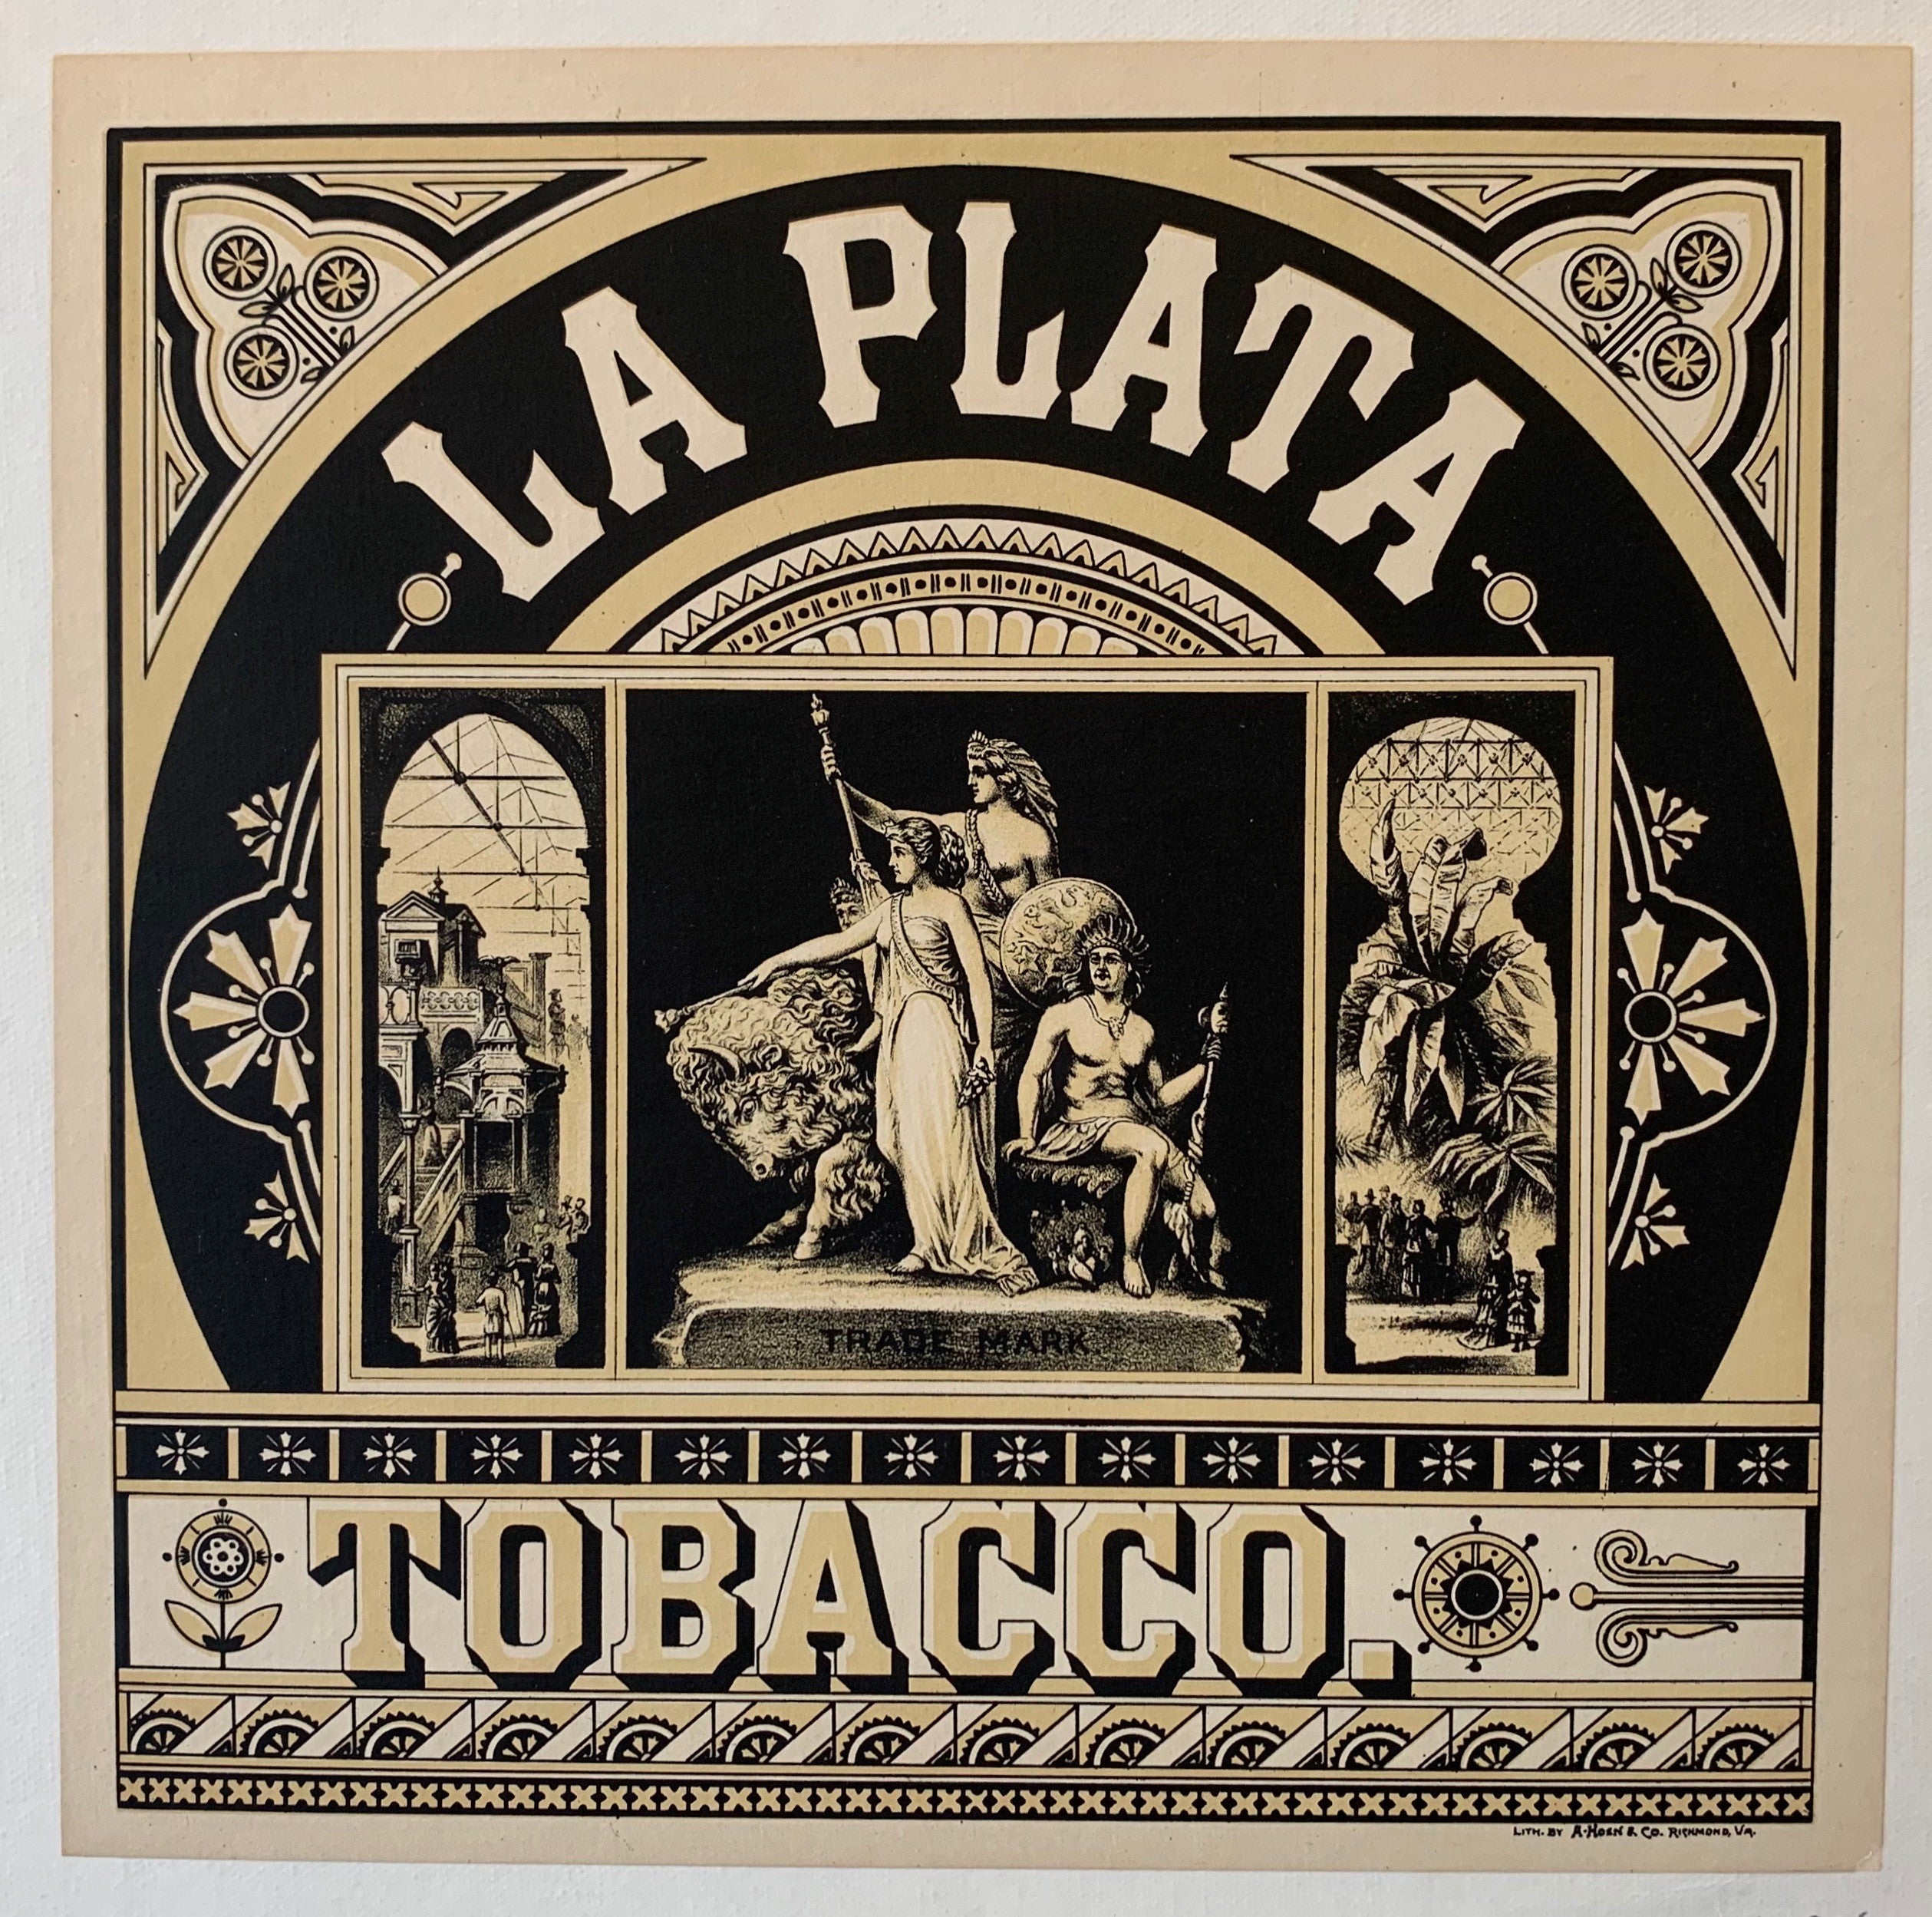 La Plata Tobacco